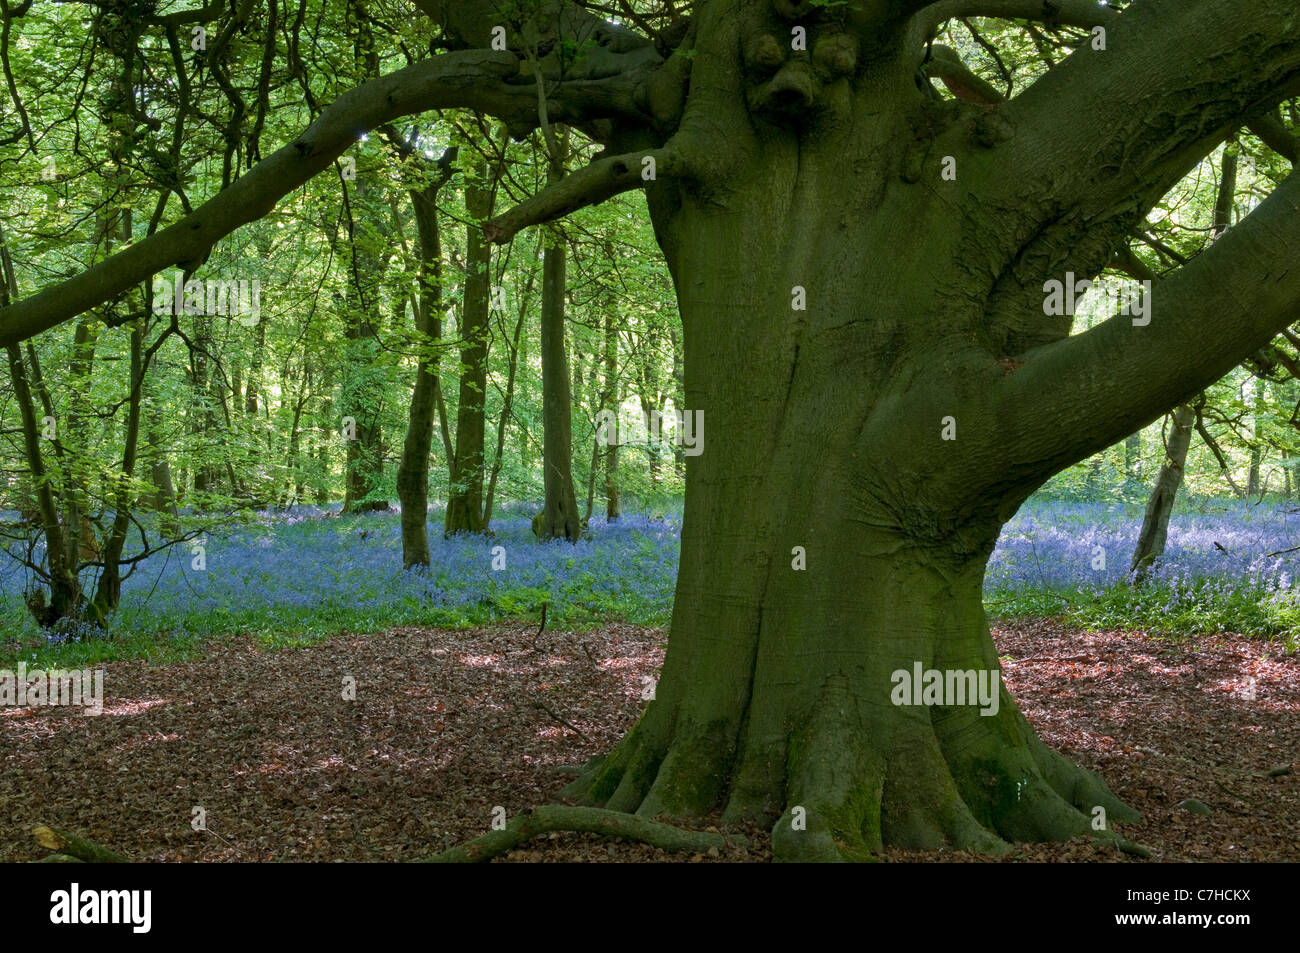 Bluebell: Hyacinthoides non-scripta, and Beech tree (Fagus sylvatica) Stock Photo